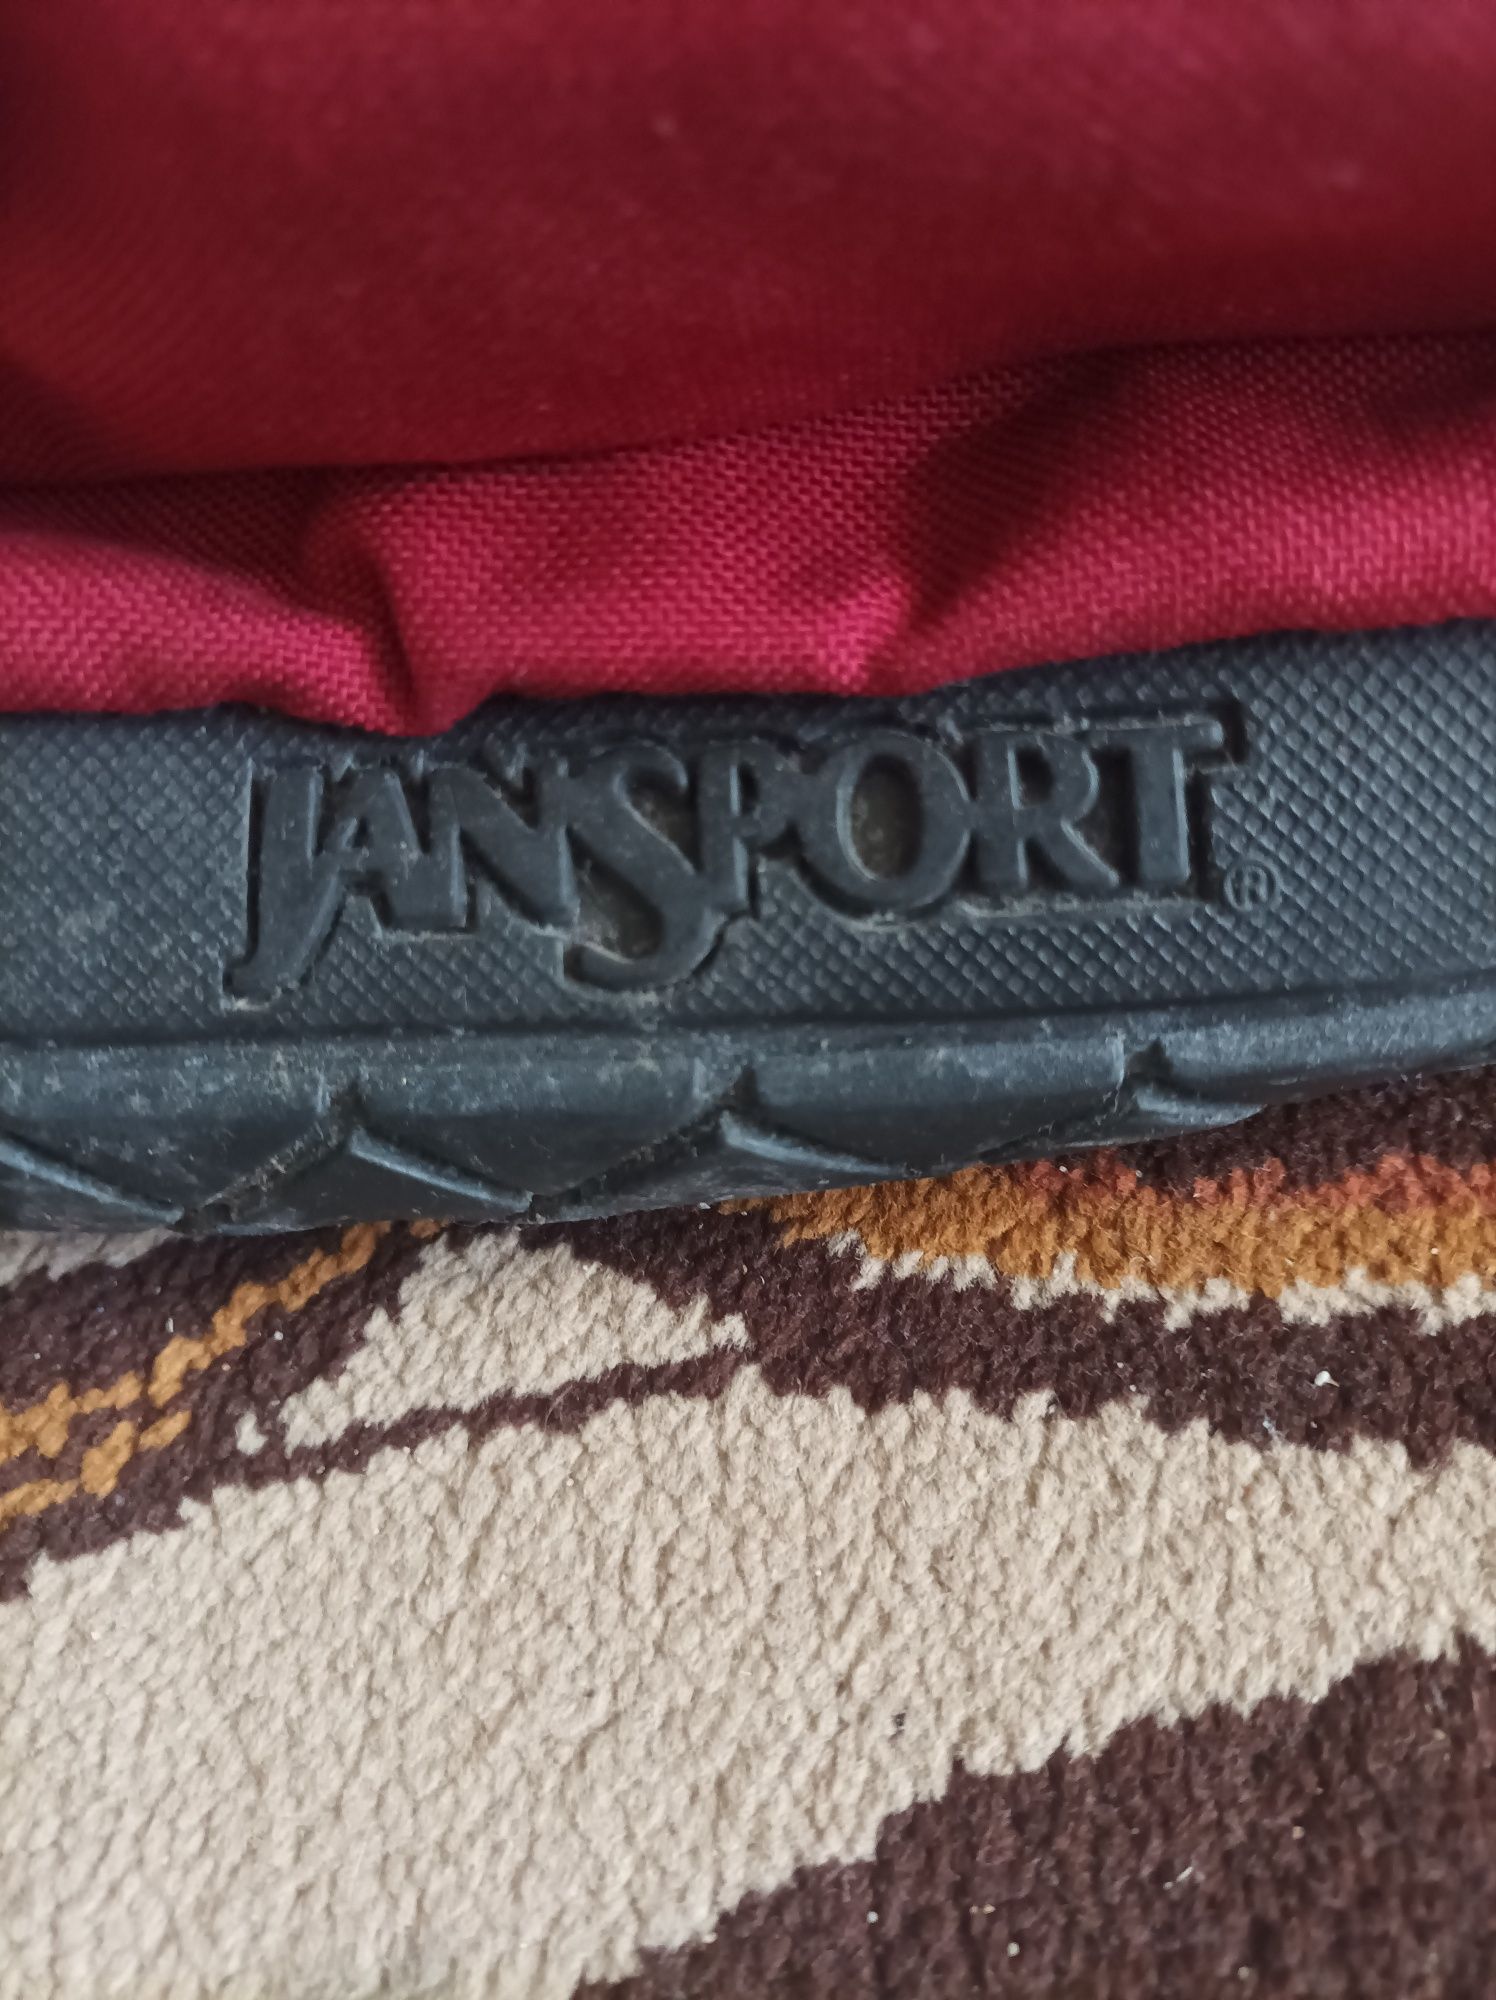 Plecak firmy Jansport